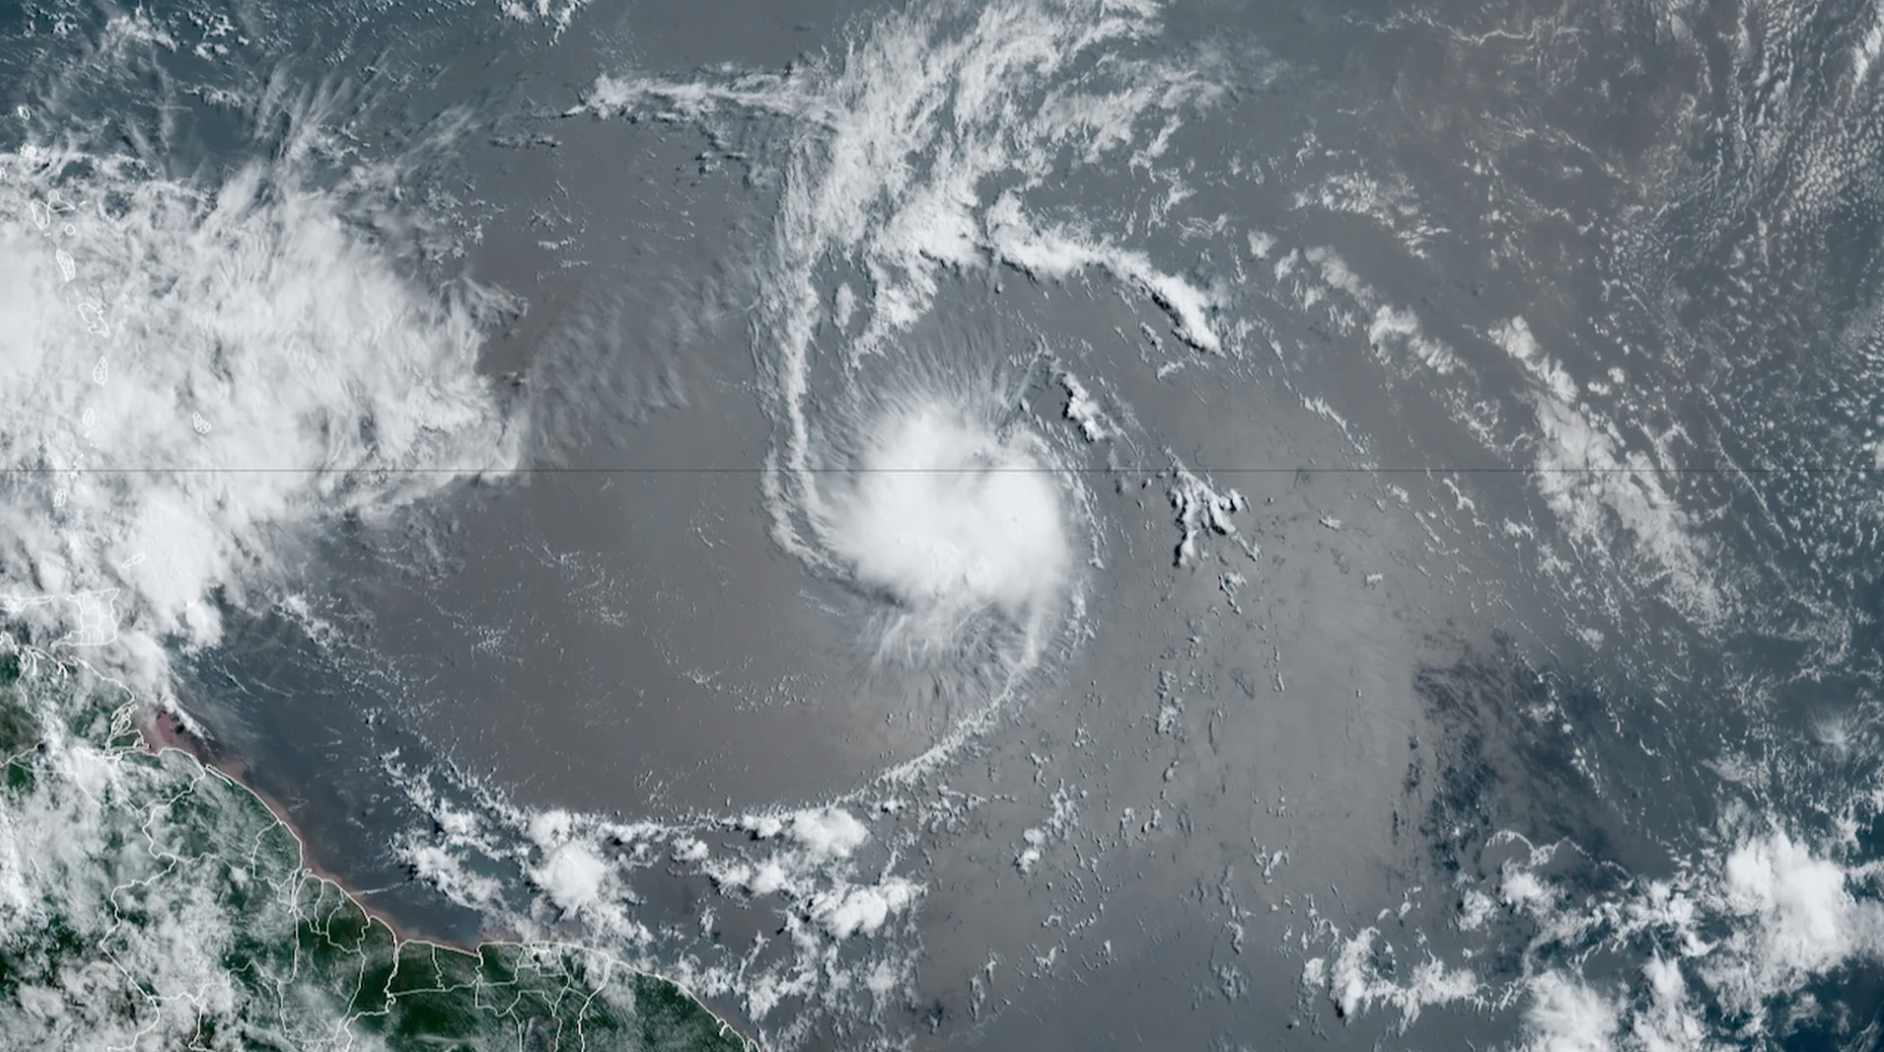 Chuyên gia dự báo: Tháng 7, khả năng xuất hiện từ 1-2 cơn bão, áp thấp nhiệt đới trên biển Đông - Ảnh 2.